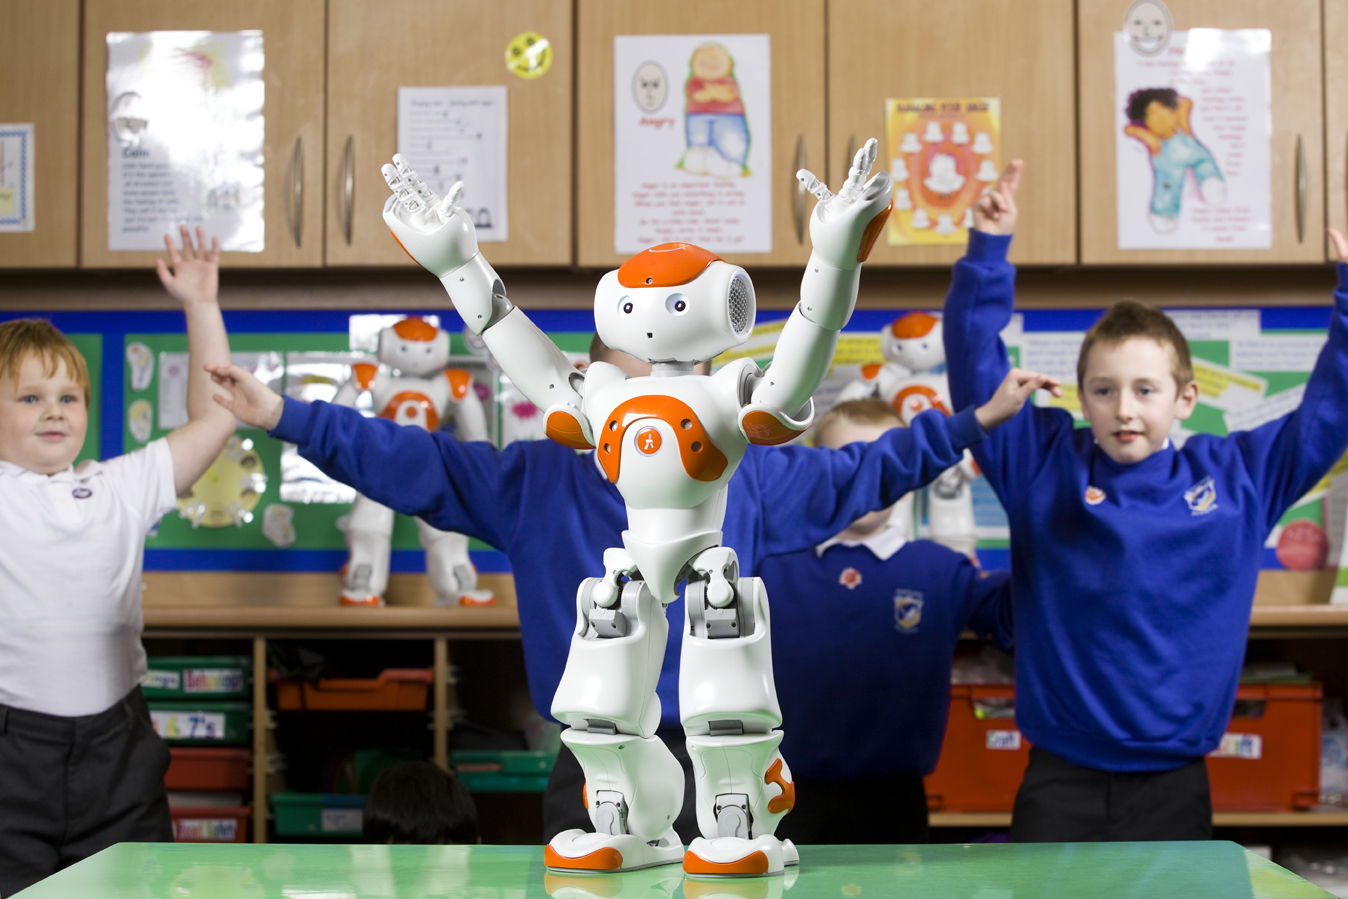 How Robotics Improves Education At School